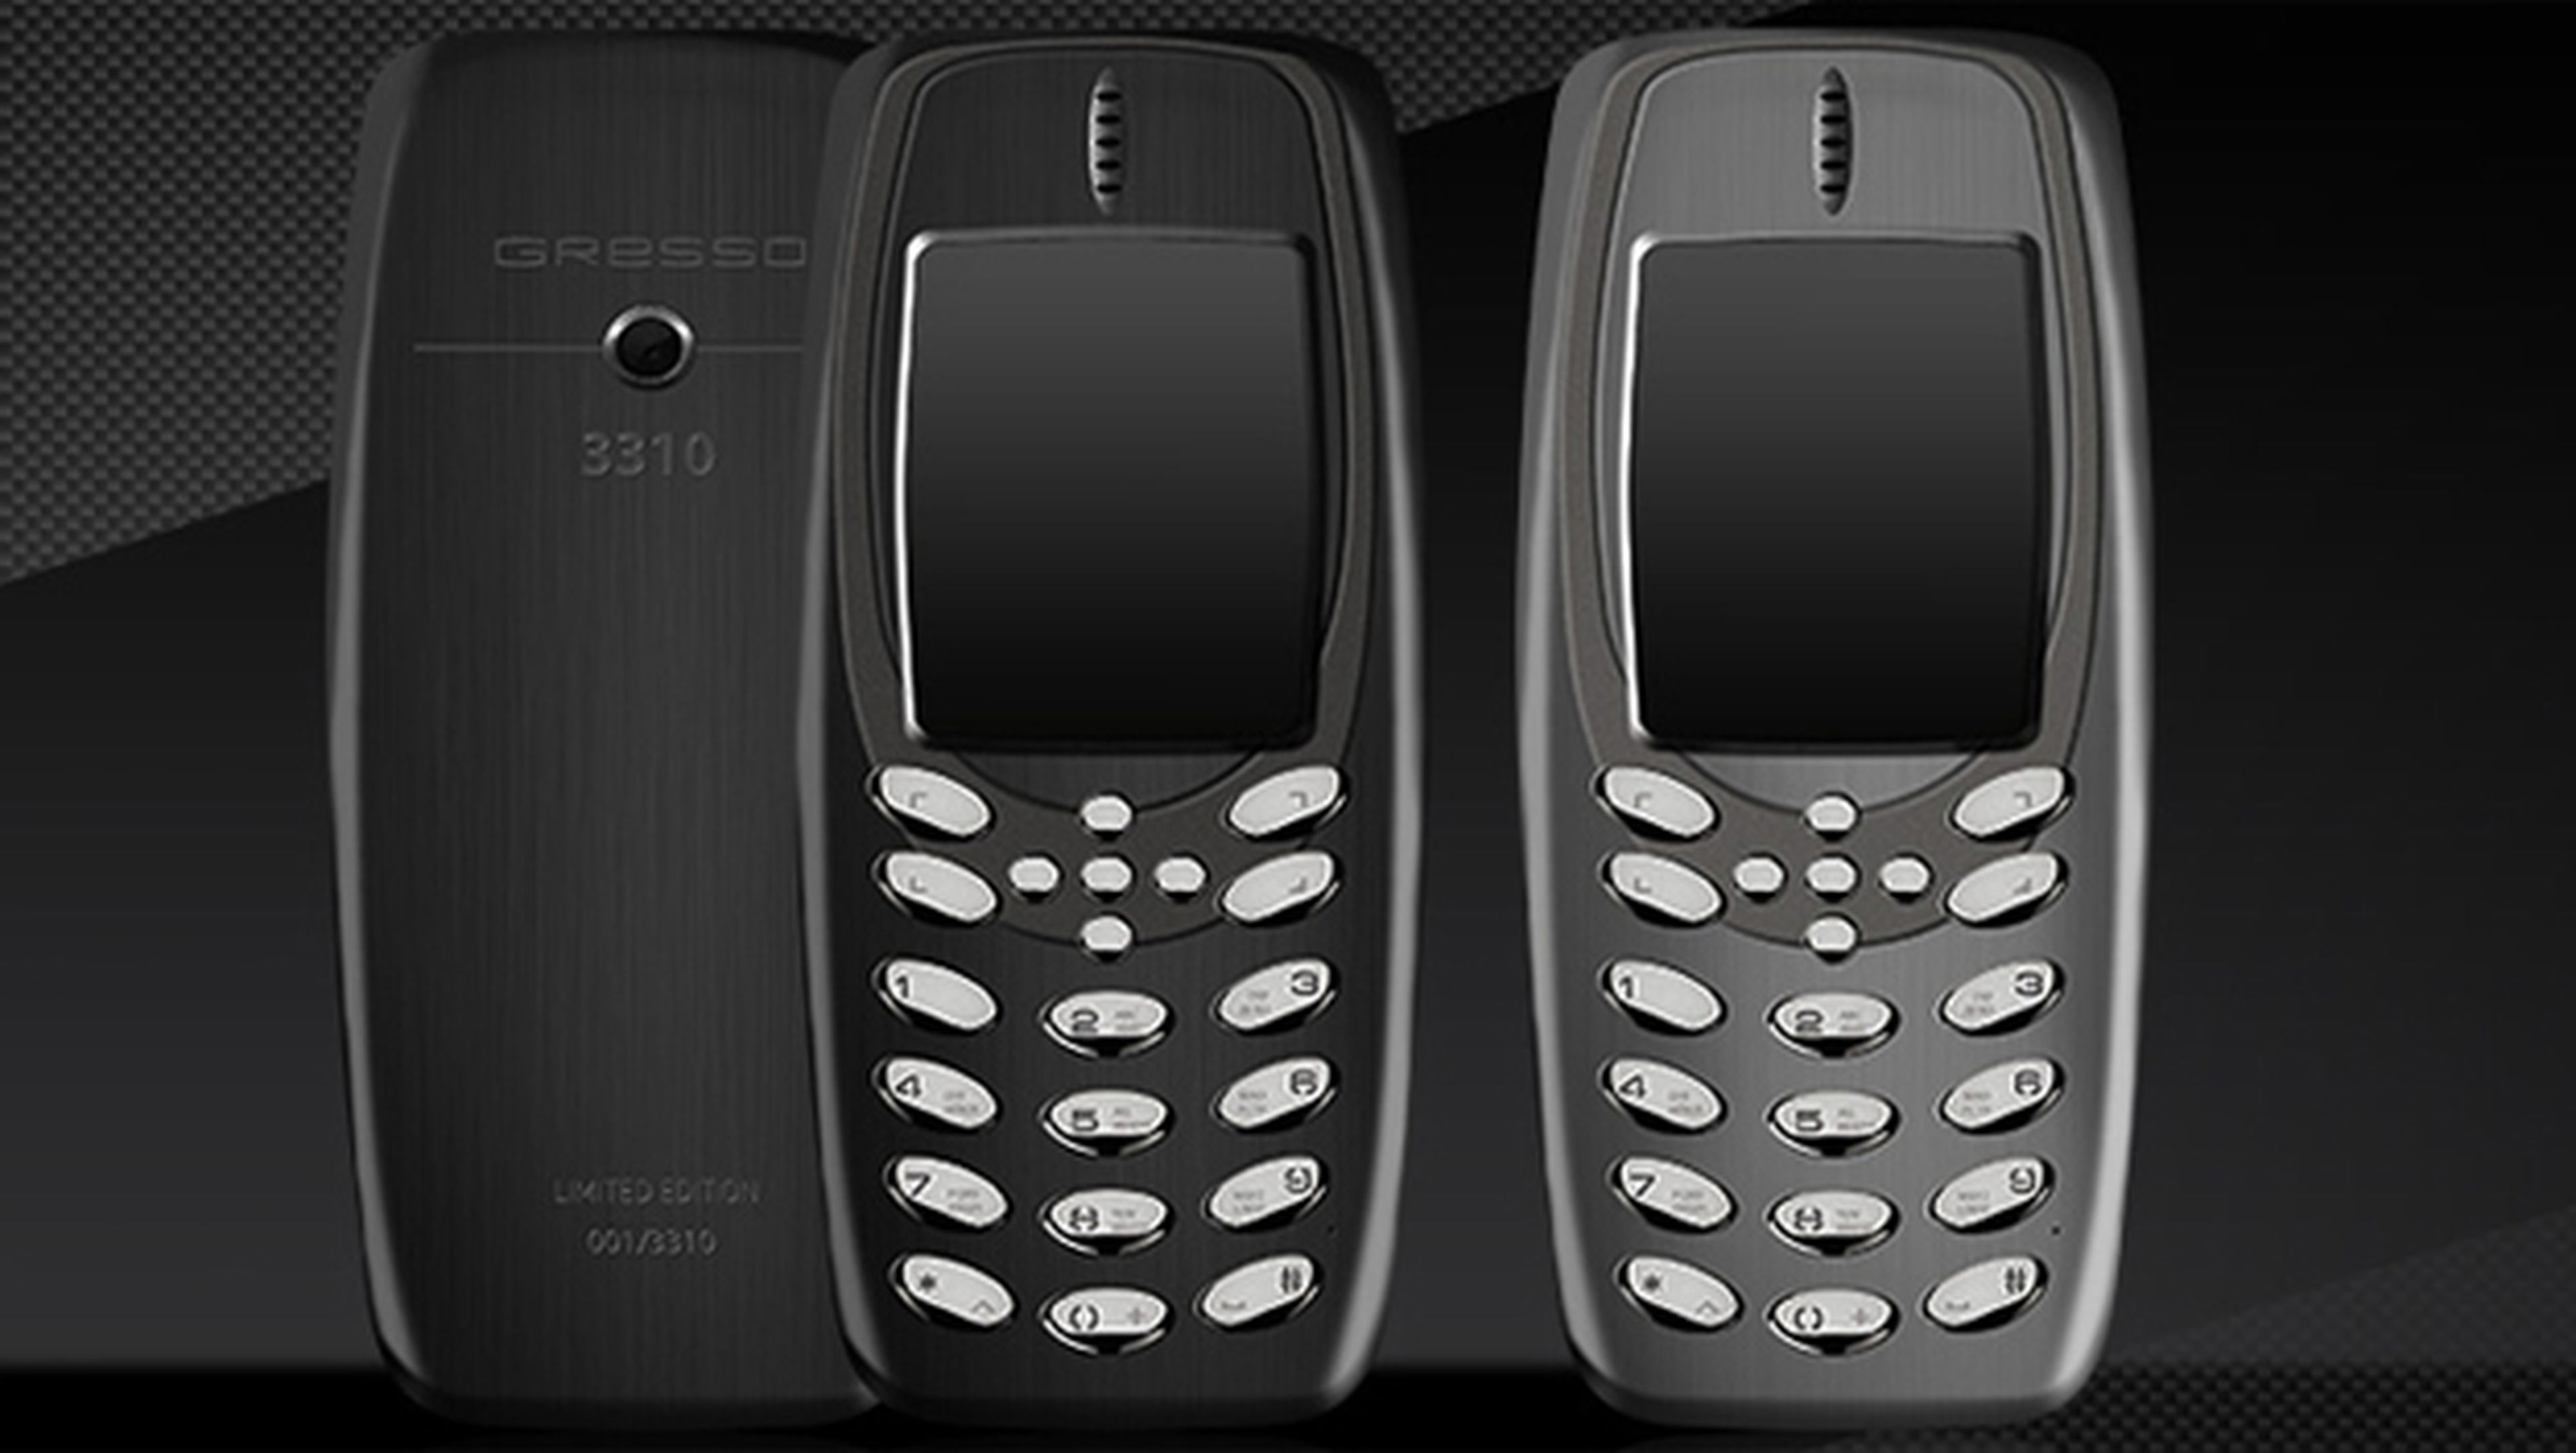 El Nokia 3310 chino que ha lanzado Gresso